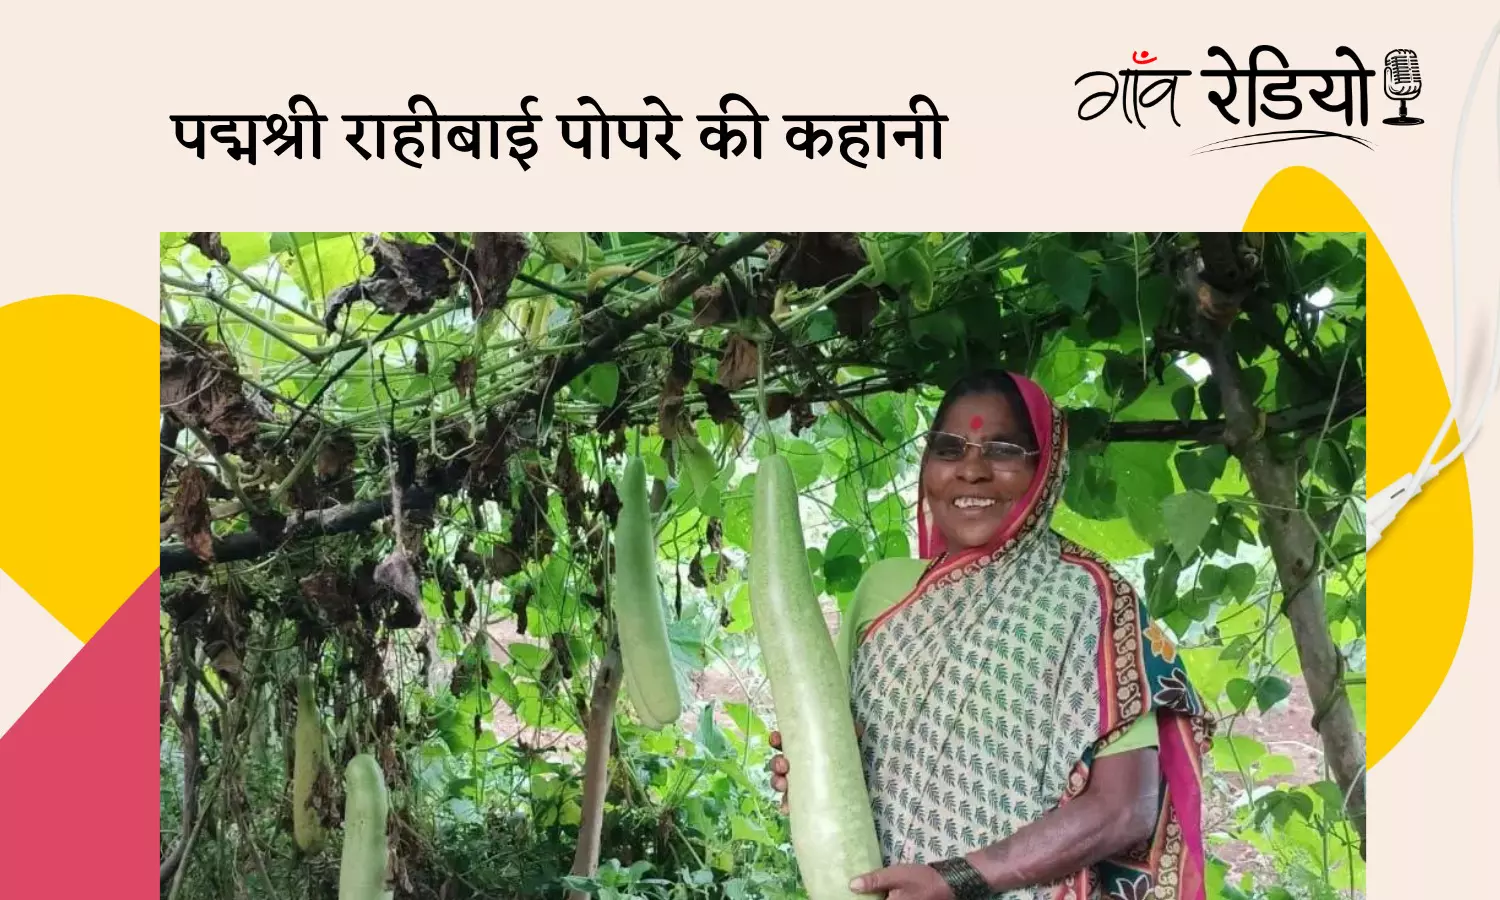 Gaon Radio: एक महिला किसान का देसी बीजों के संरक्षण से लेकर पद्मश्री का सफर